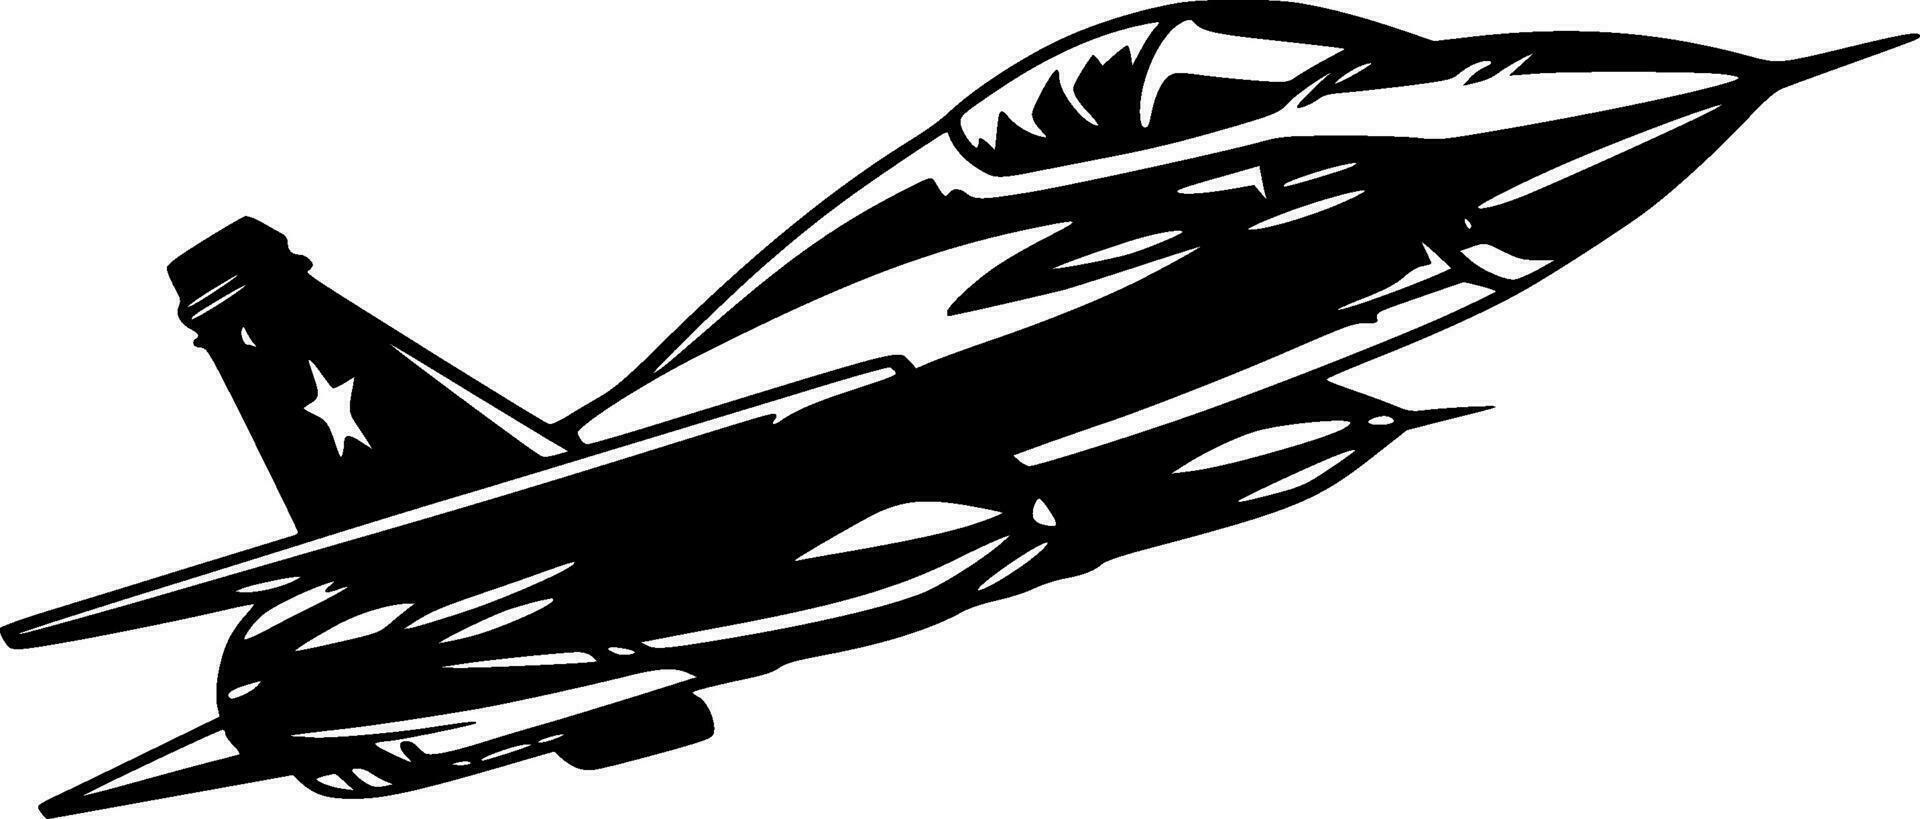 combattente Jet - alto qualità vettore logo - vettore illustrazione ideale per maglietta grafico